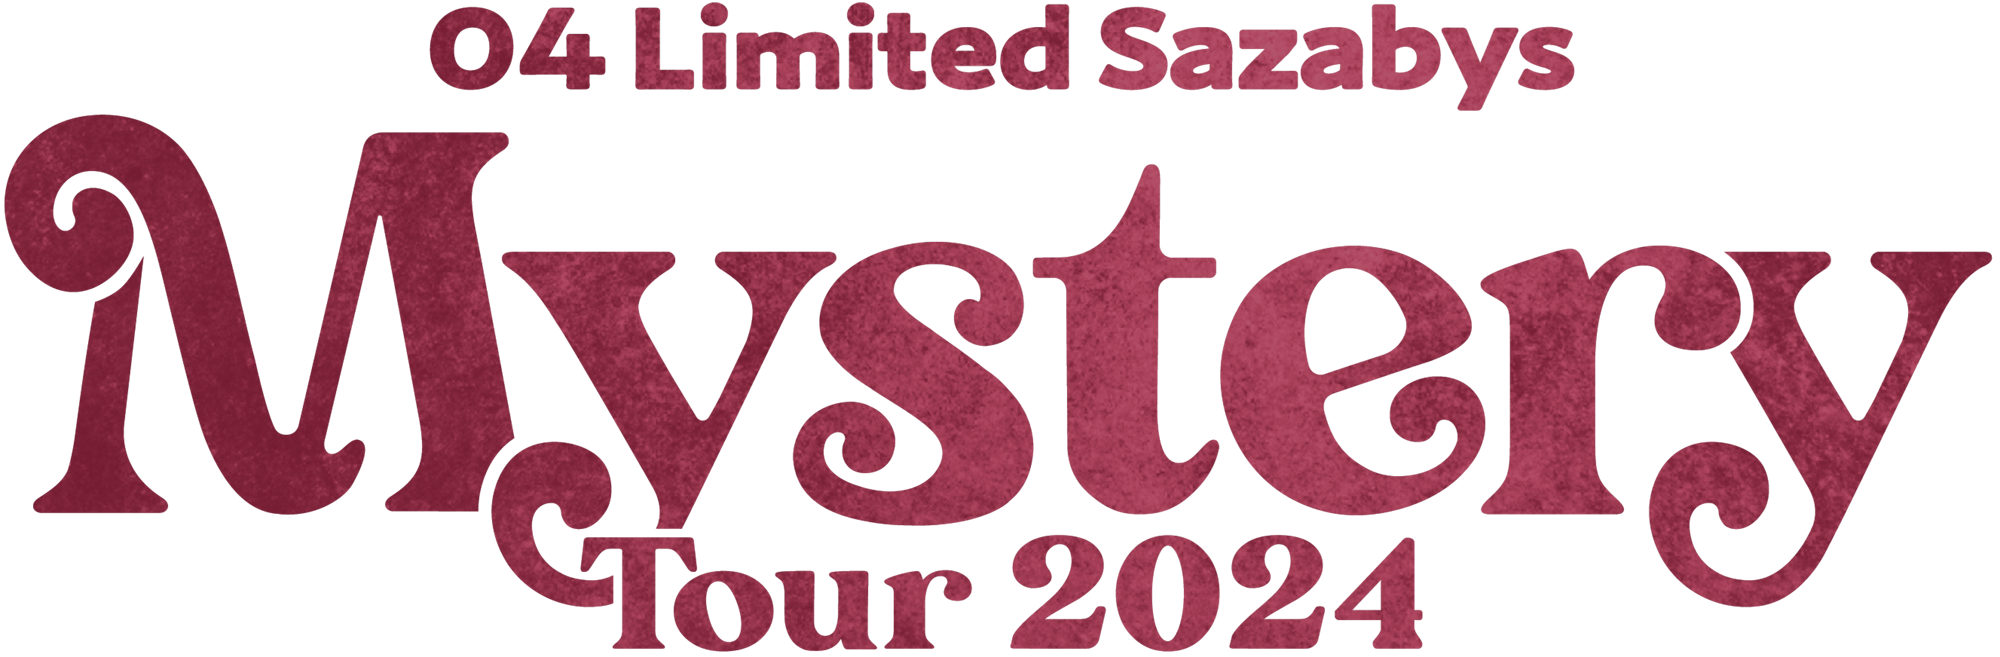 04 Limited Sazabys MYSTERY TOUR 2024